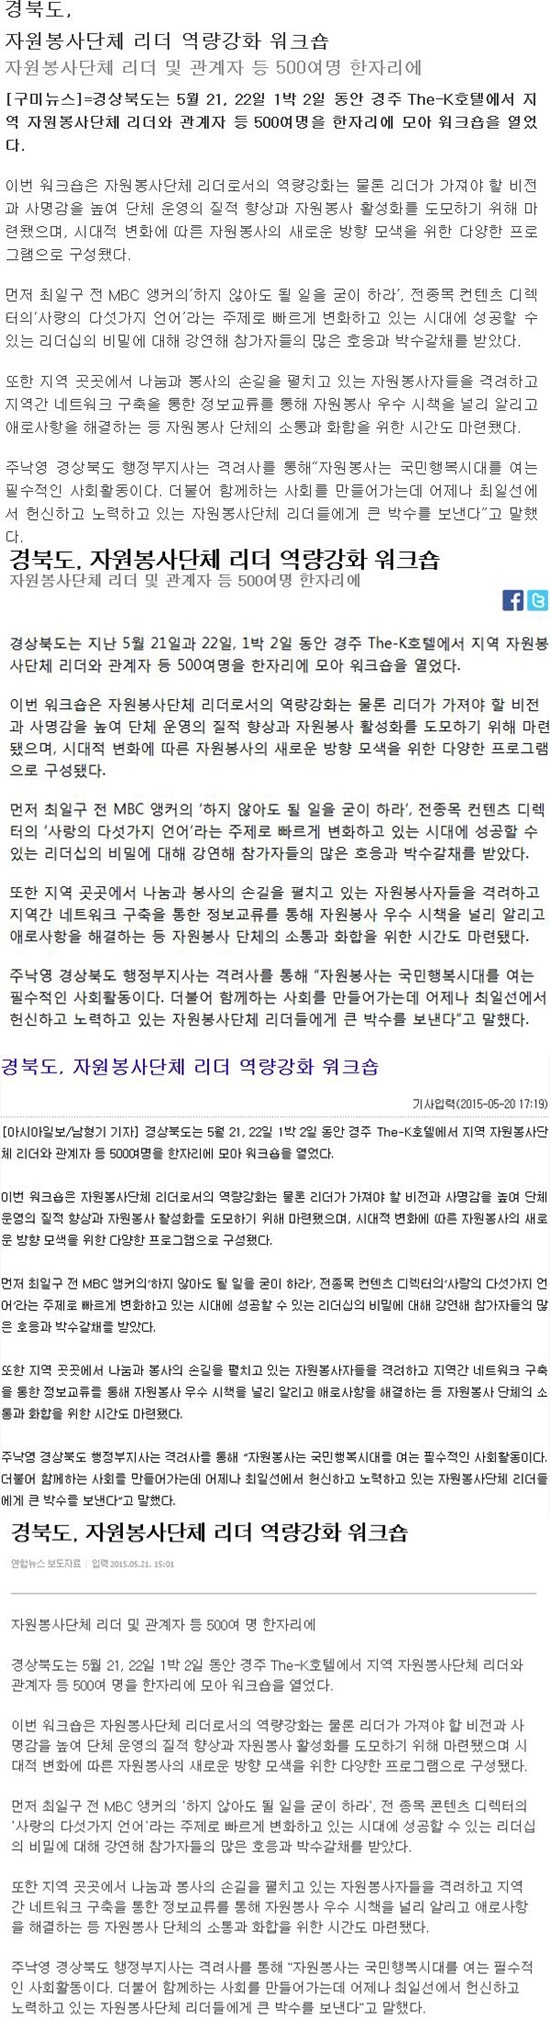 경북도, 자원봉사단체 리더 역량강화 워크숍, 구미뉴스-vert.jpg